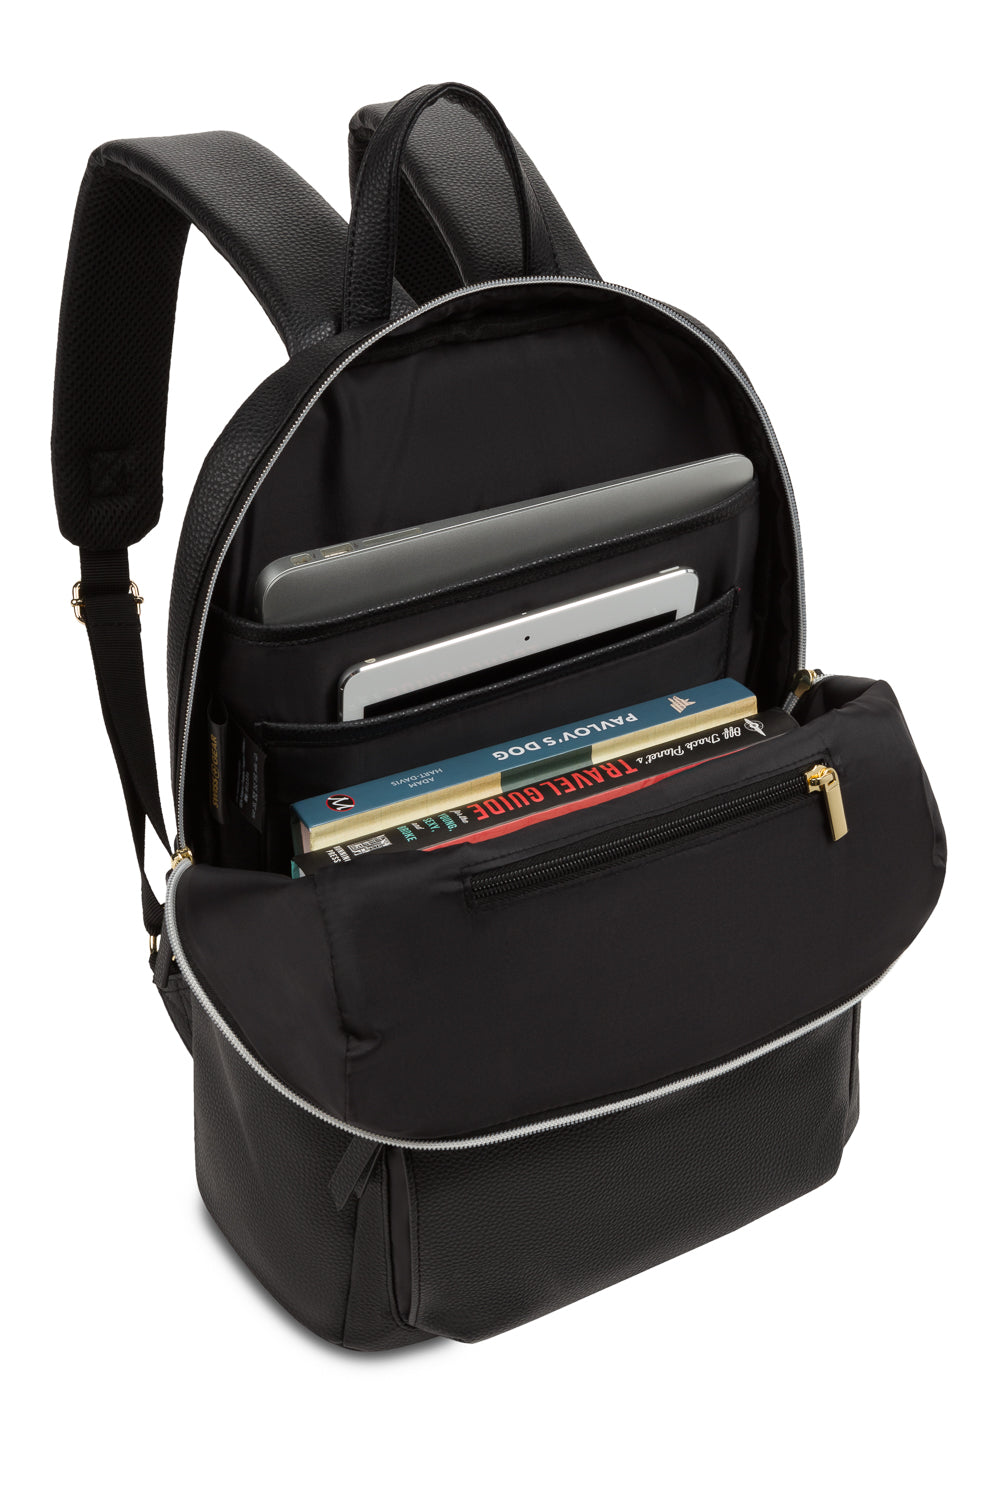 SwissGear 9901 Laptop Backpack